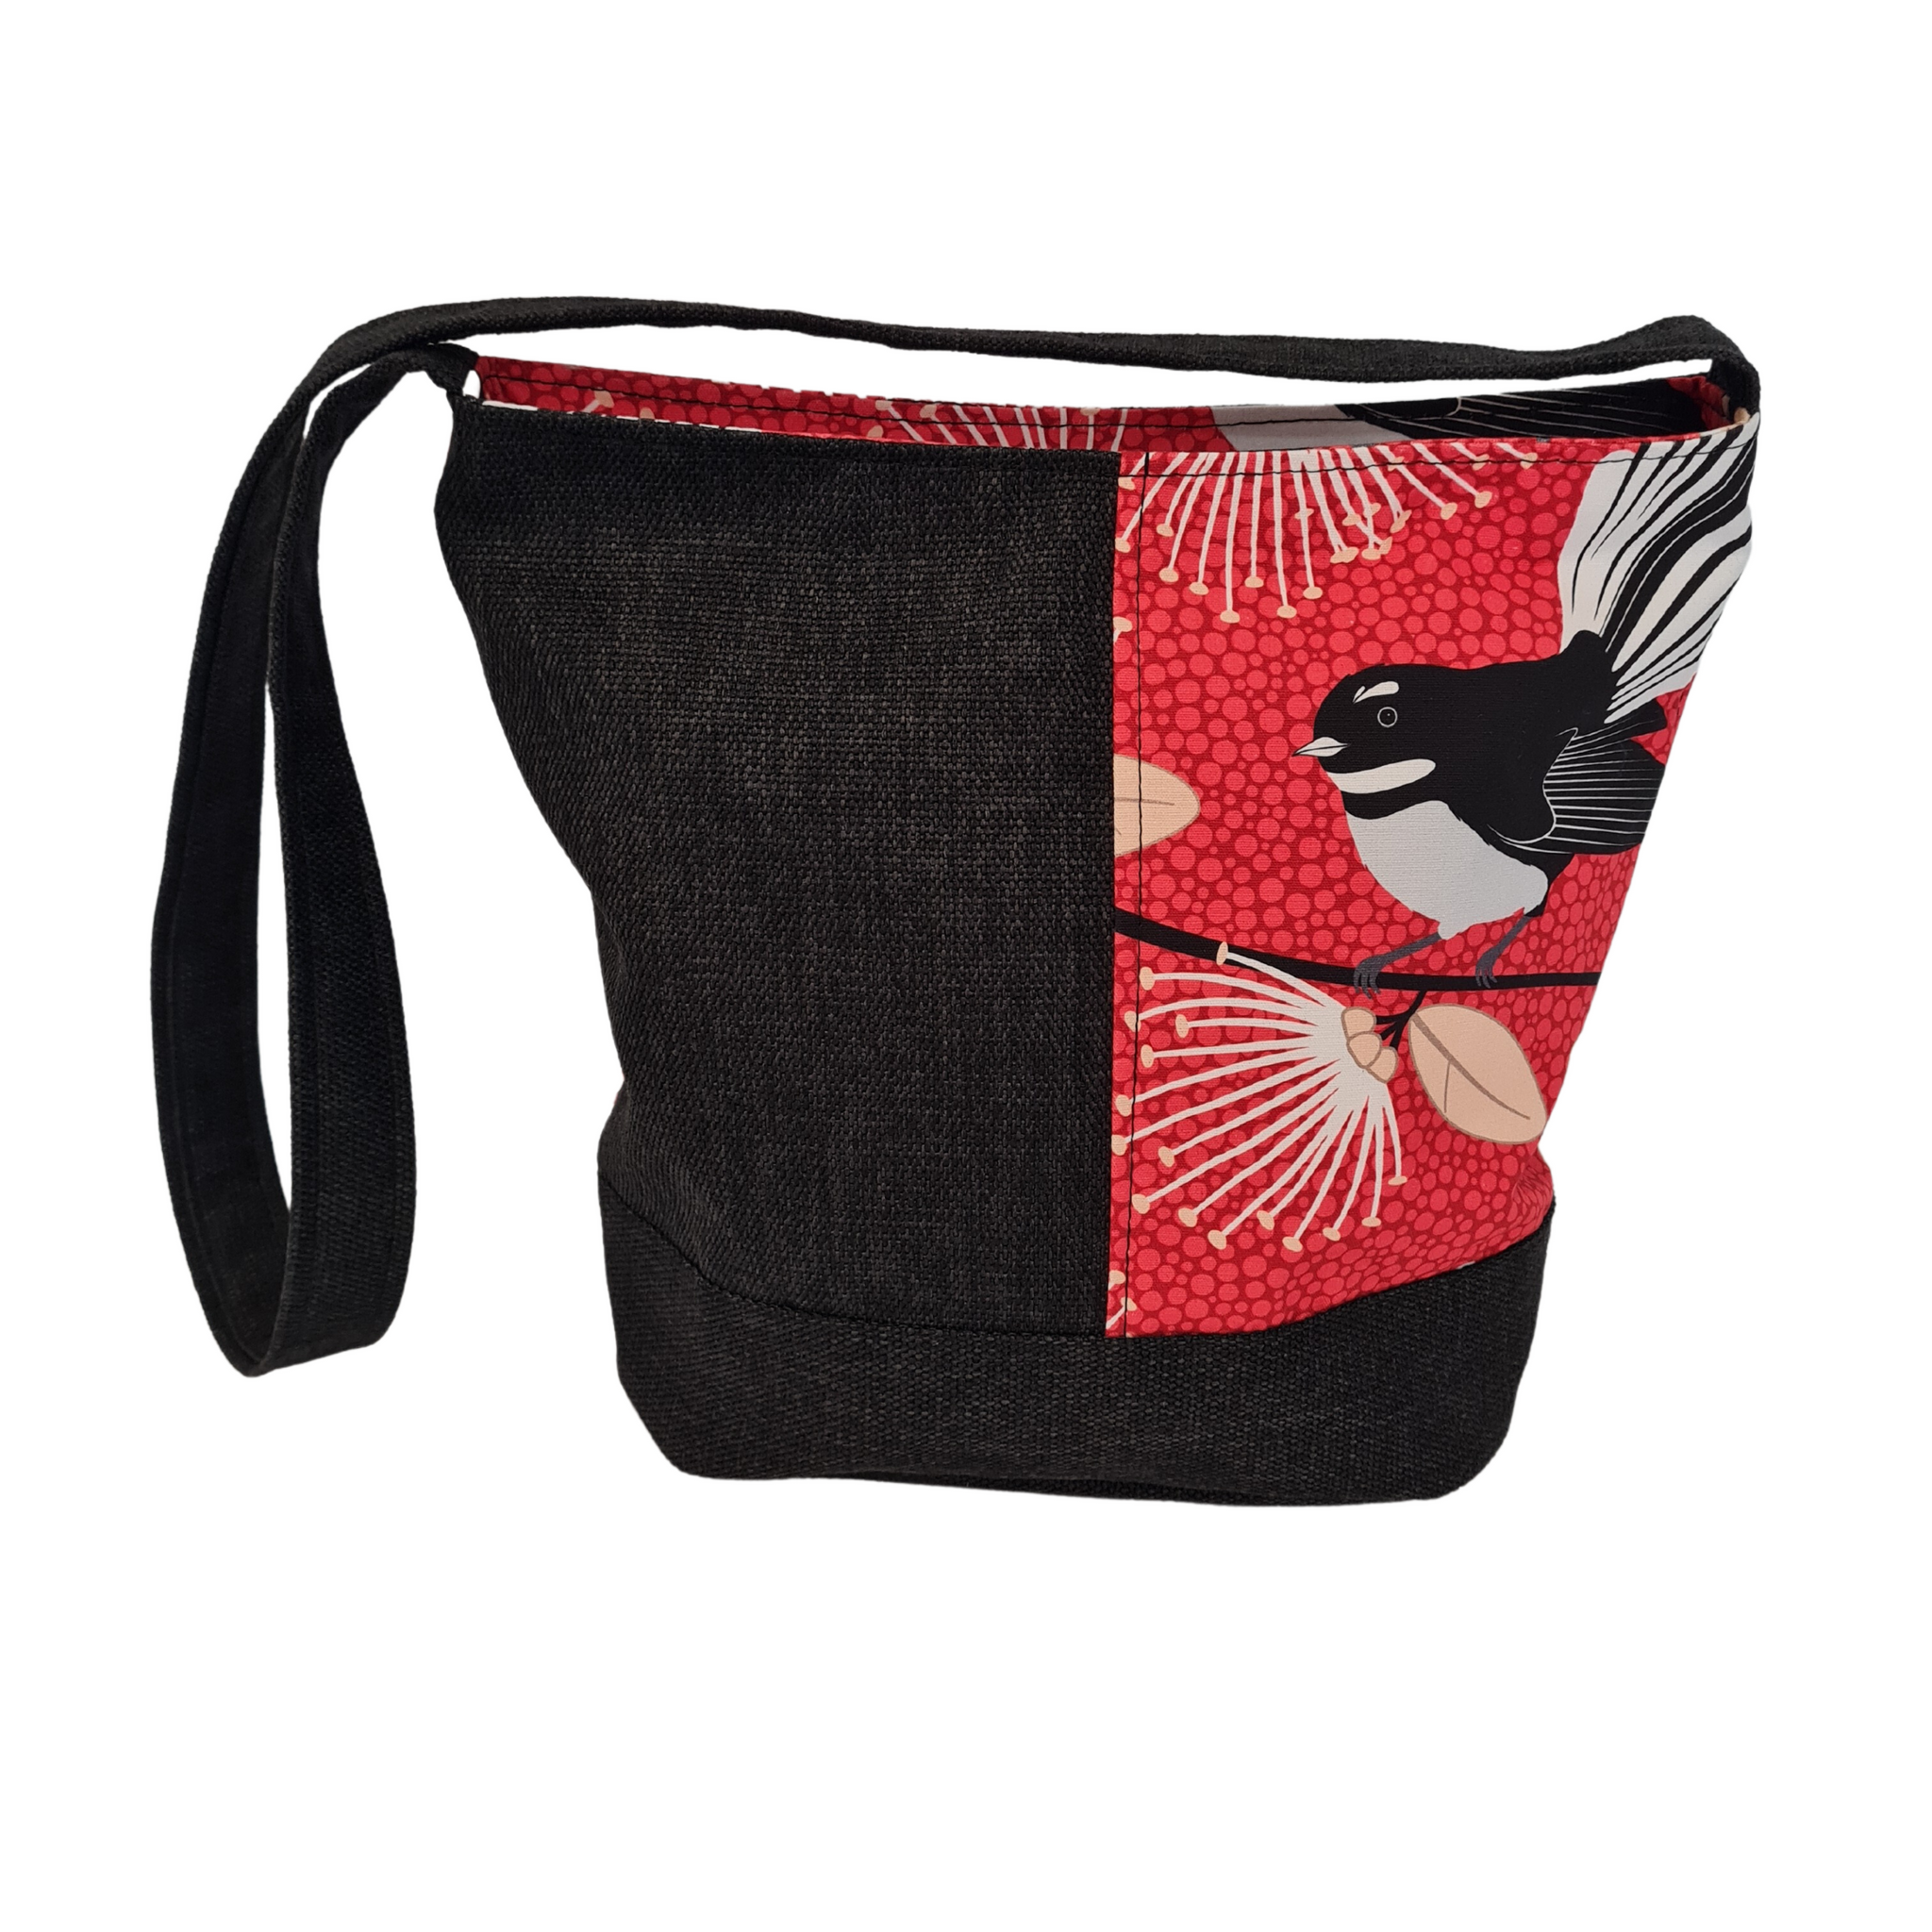 Bucket bag - Red Pīwakawaka - Fantails - Shoulder Bag